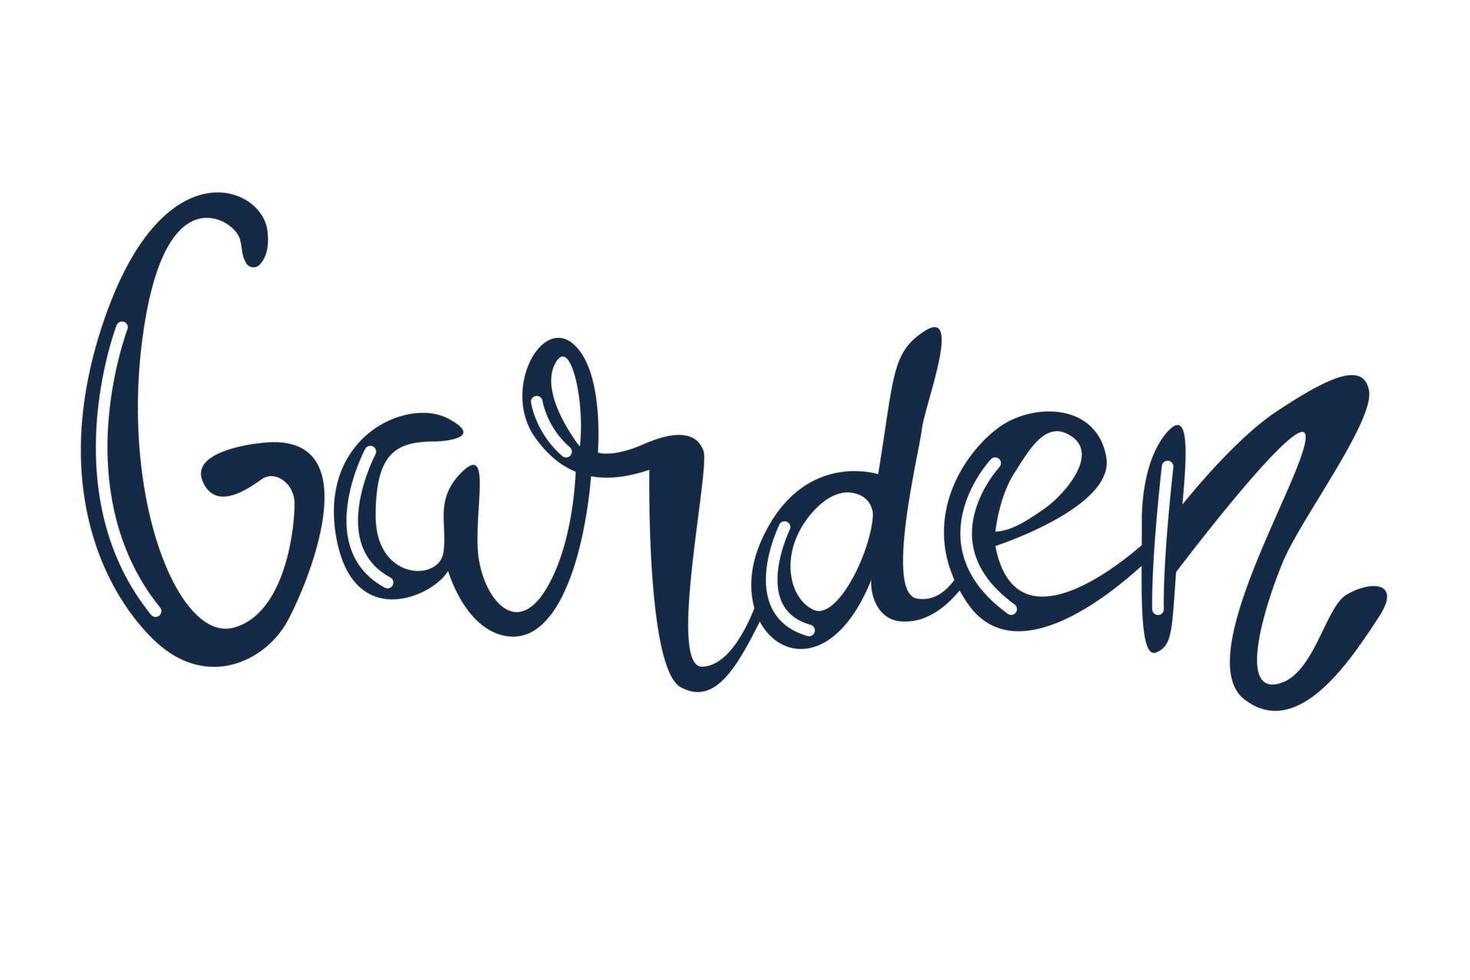 giardino, scritte a mano di vettore in blu con riflessi bianchi su sfondo bianco